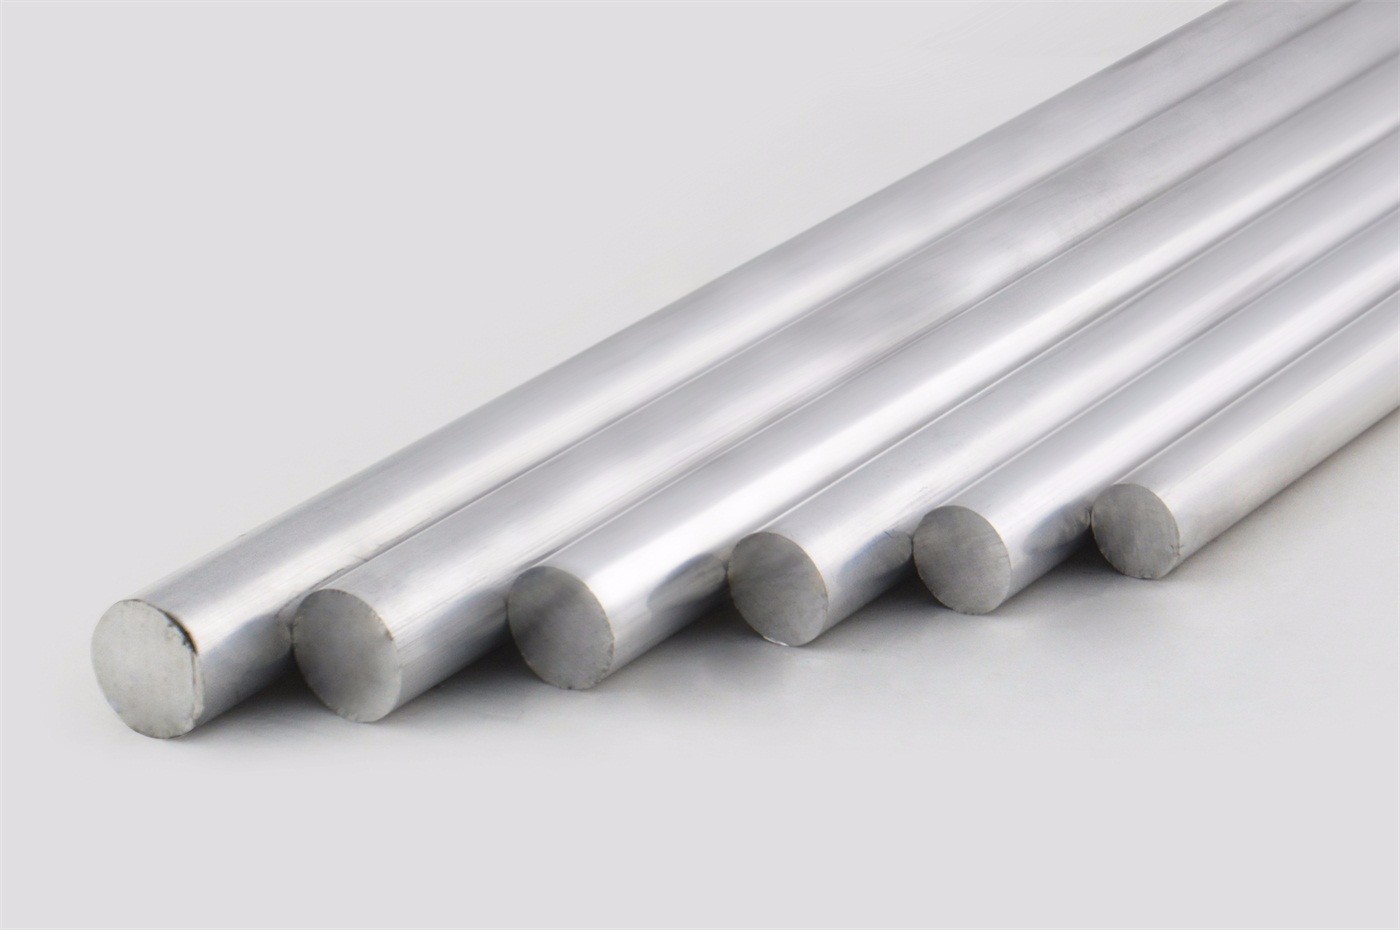 Aluminum rod